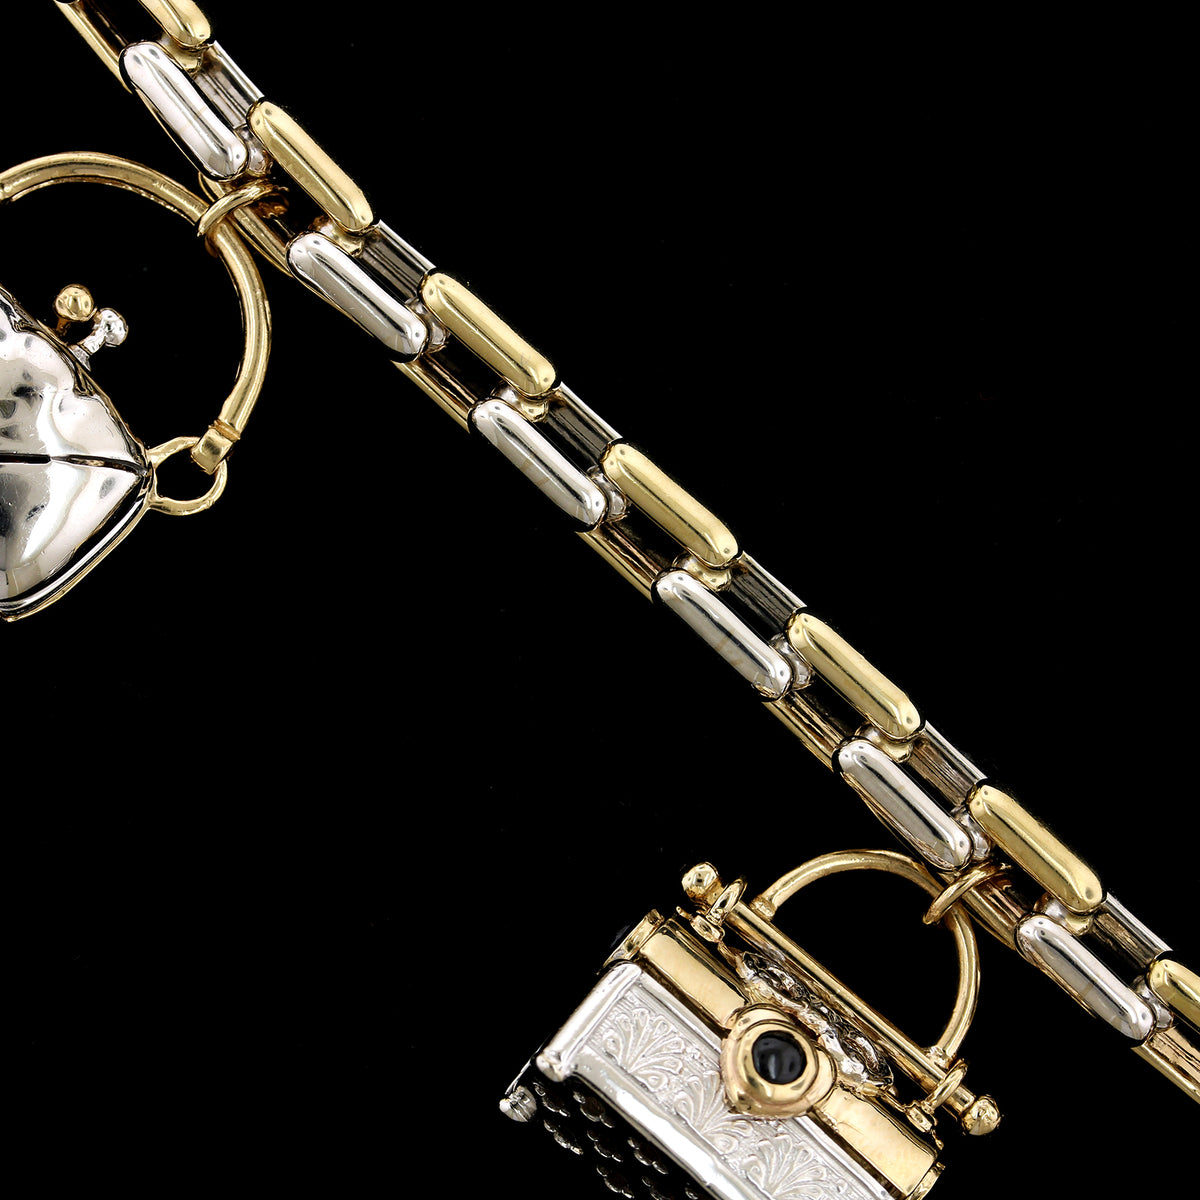 14K Two-toned Gold Estate Pocketbook Charm Bracelet